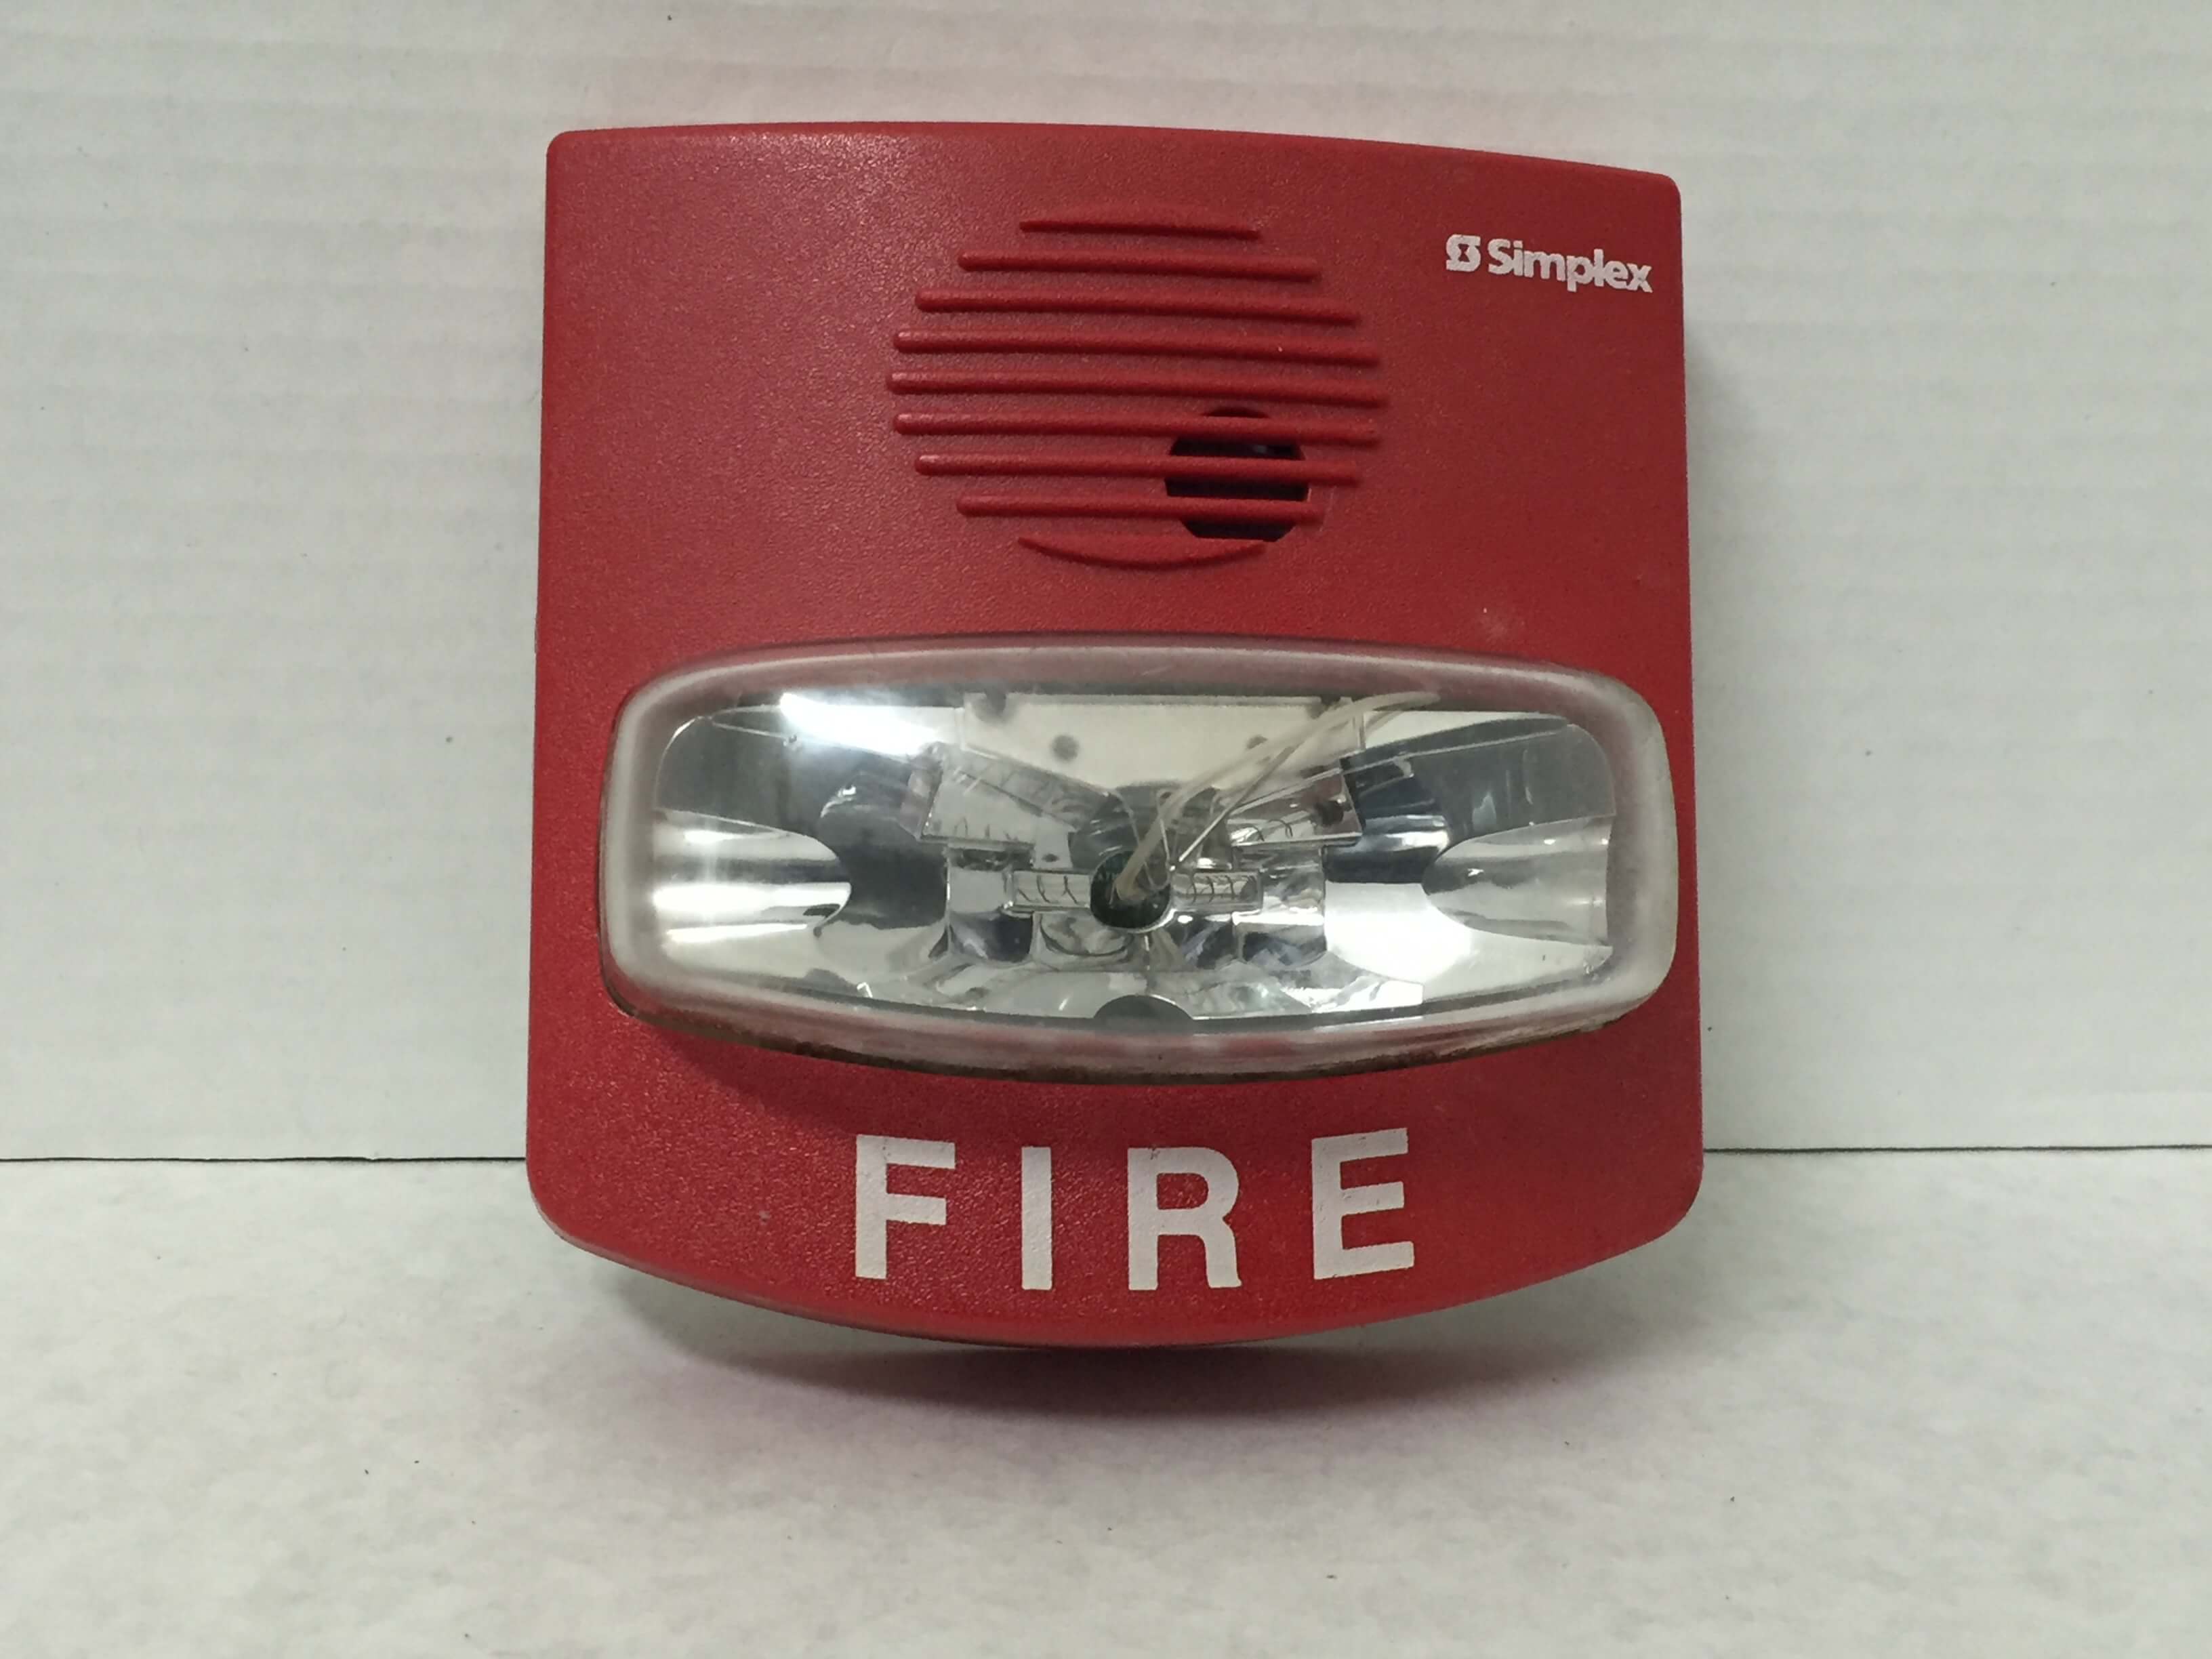 Simplex 4903-9481 - FireAlarms.tv - jjinc24/U8oL0's Fire Alarm ...